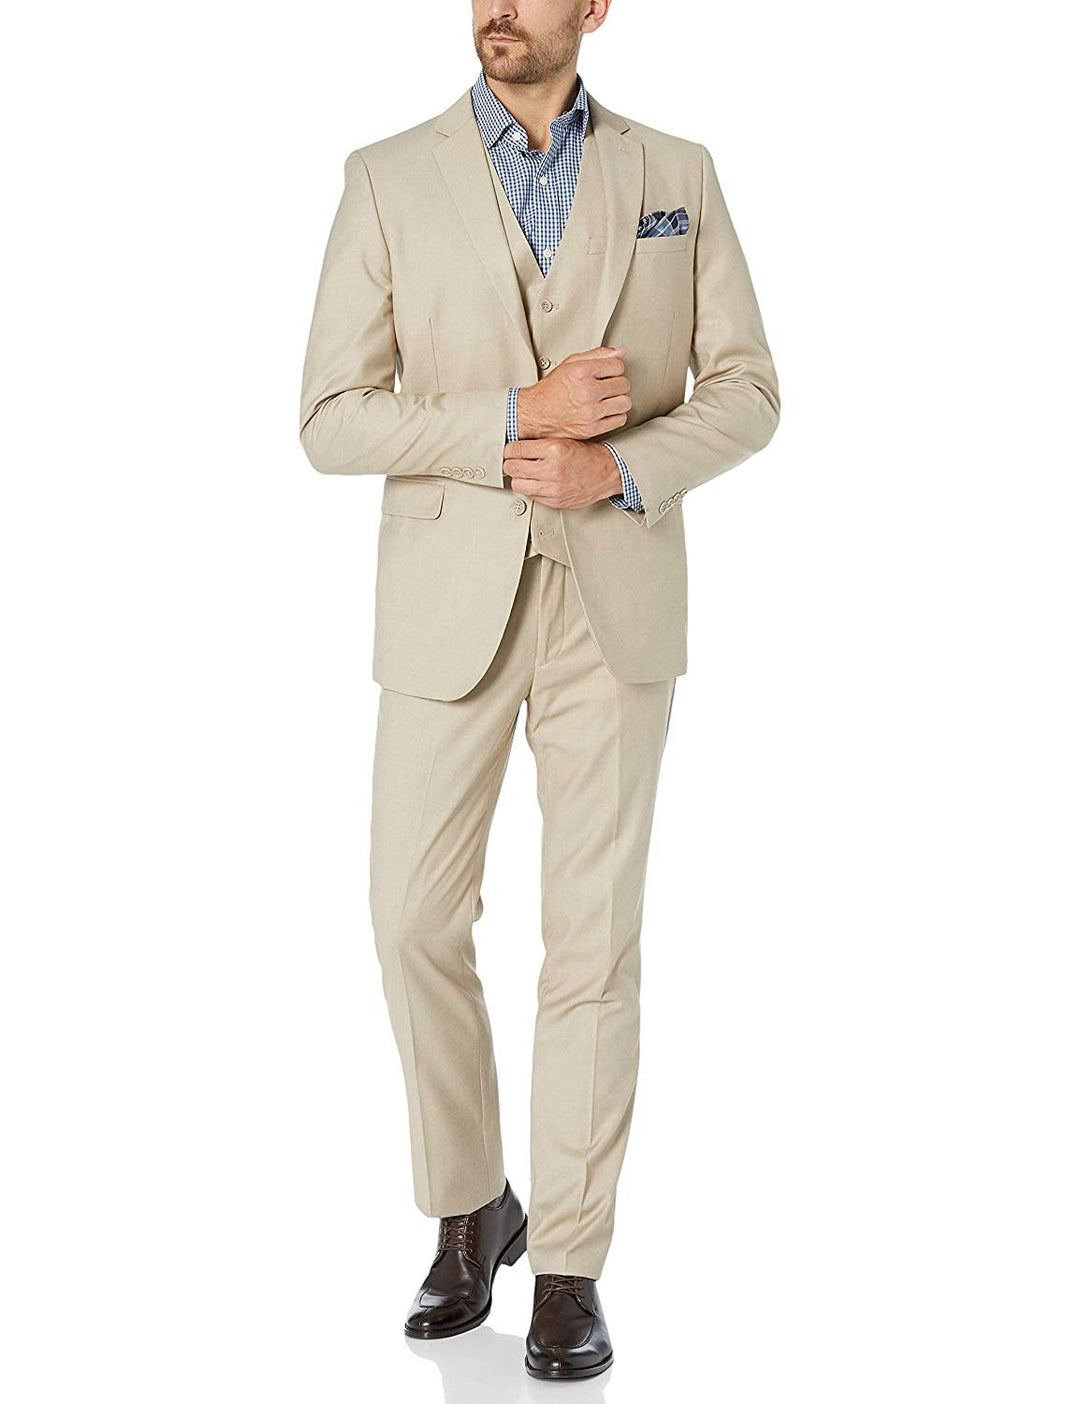 Adam Baker Men's Slim Fit 3-Piece (Jacket, Vets, Trousers) Vested Suit Set - Light Grey & Beige